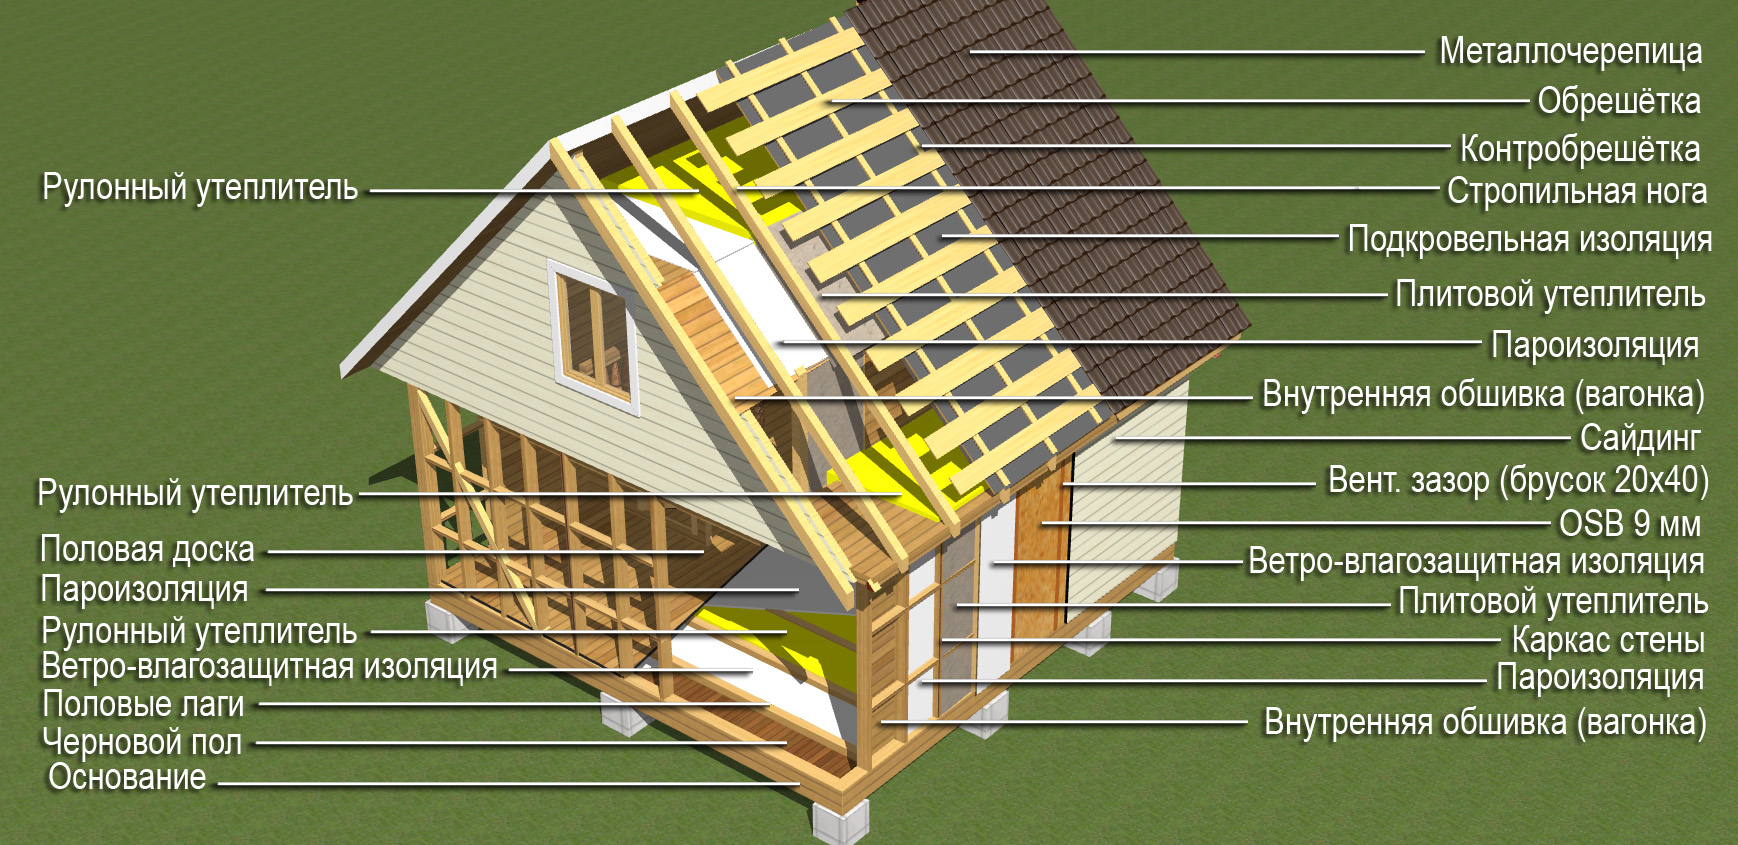 Как построить дом самостоятельно с нуля